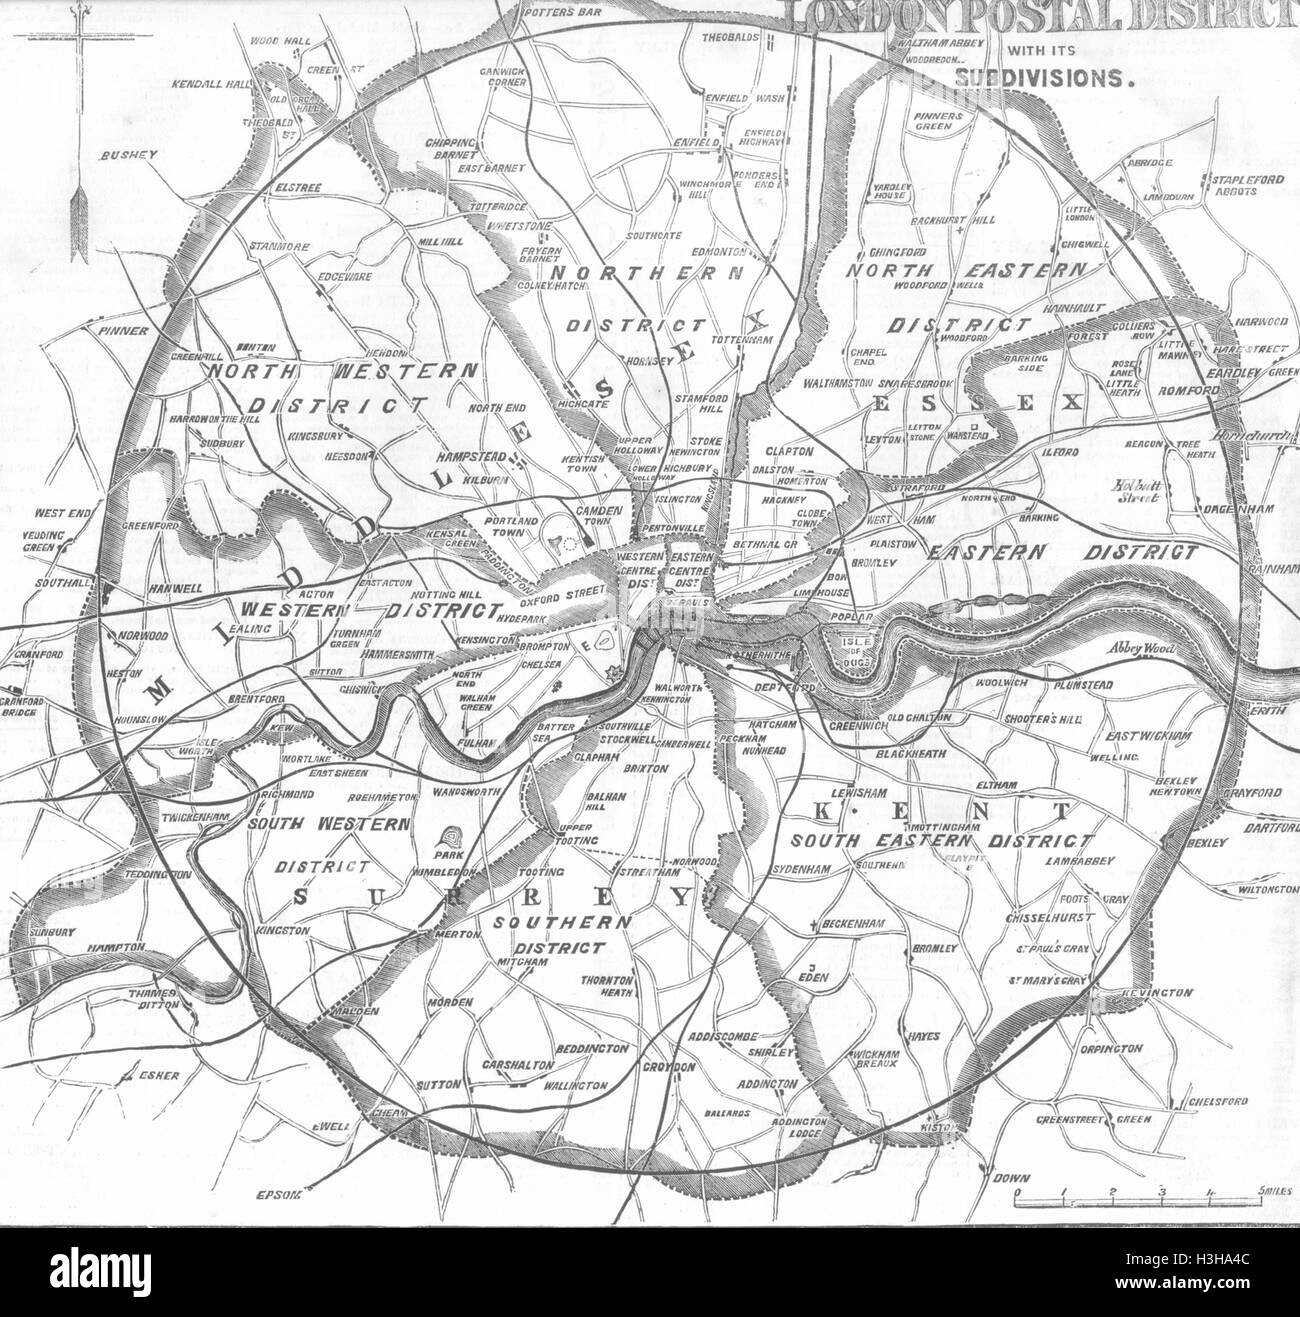 LONDON-Einführung von Postleitzahlen London 1857. Illustrierte London News Stockfoto